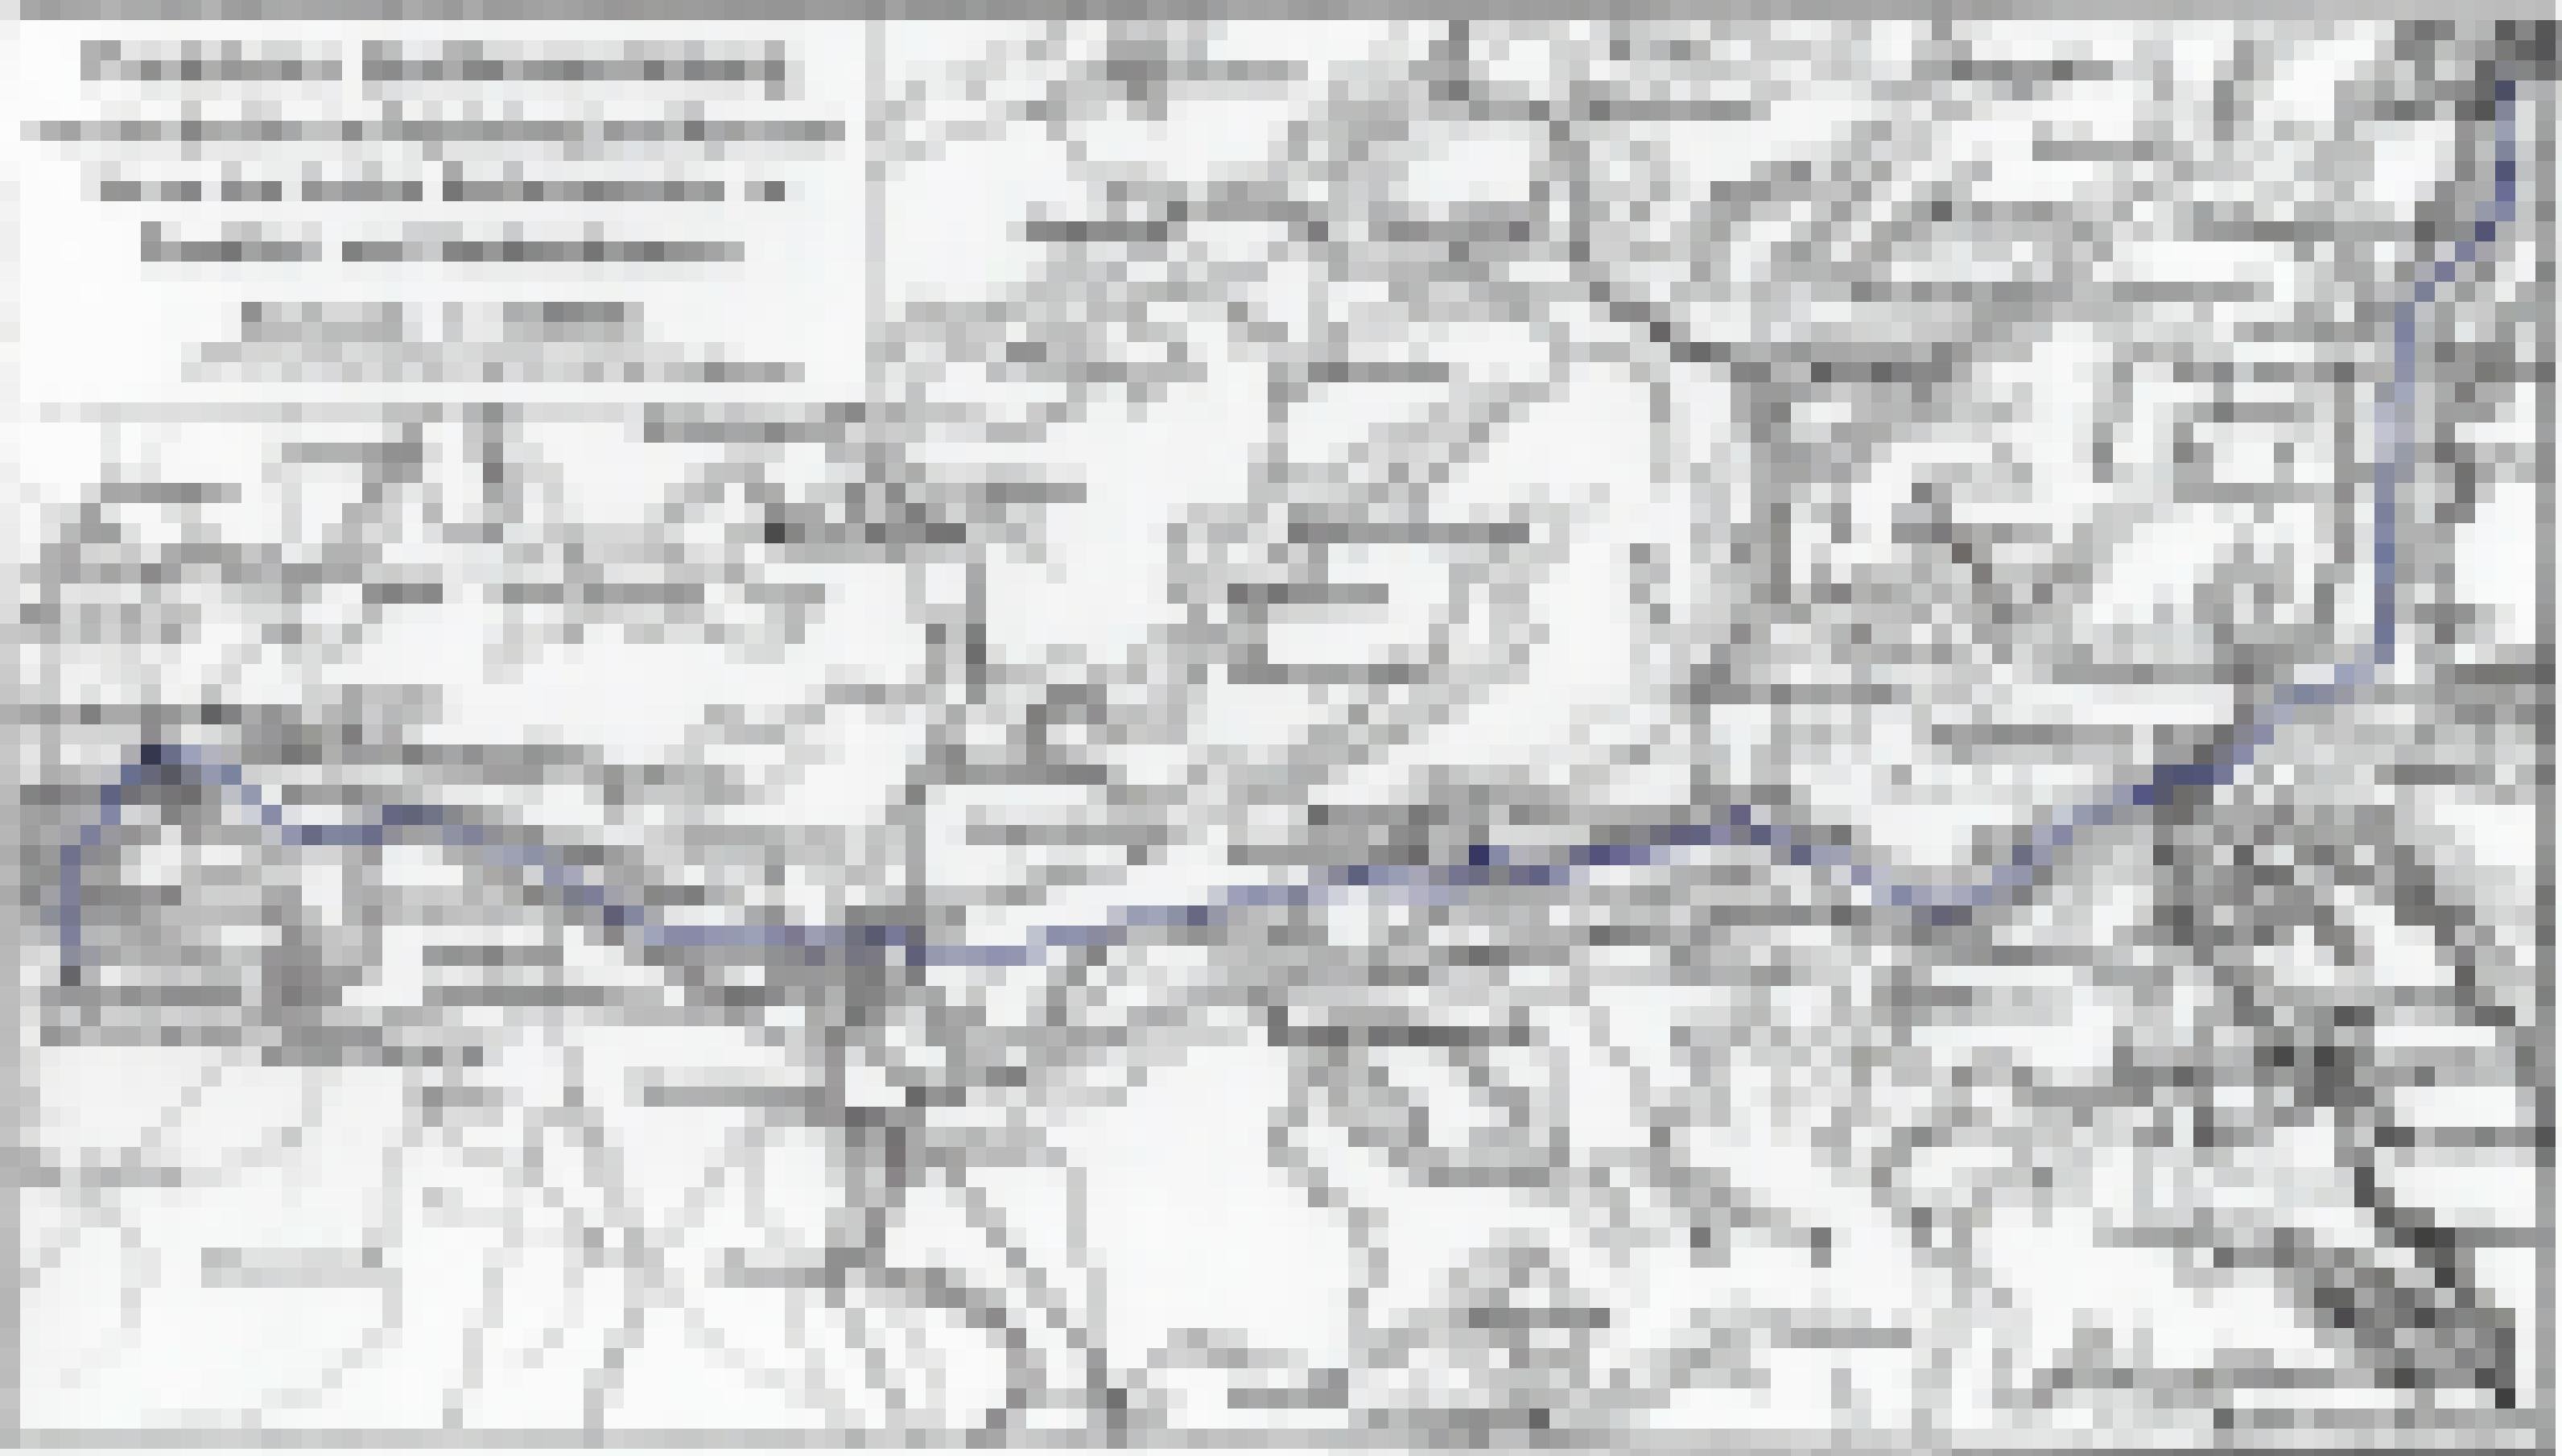 Hostorsiche Karte von 1909 zeigt den Verlauf der Wasserleitung aus Vogelsberg und Spessart nach Frankfurt.